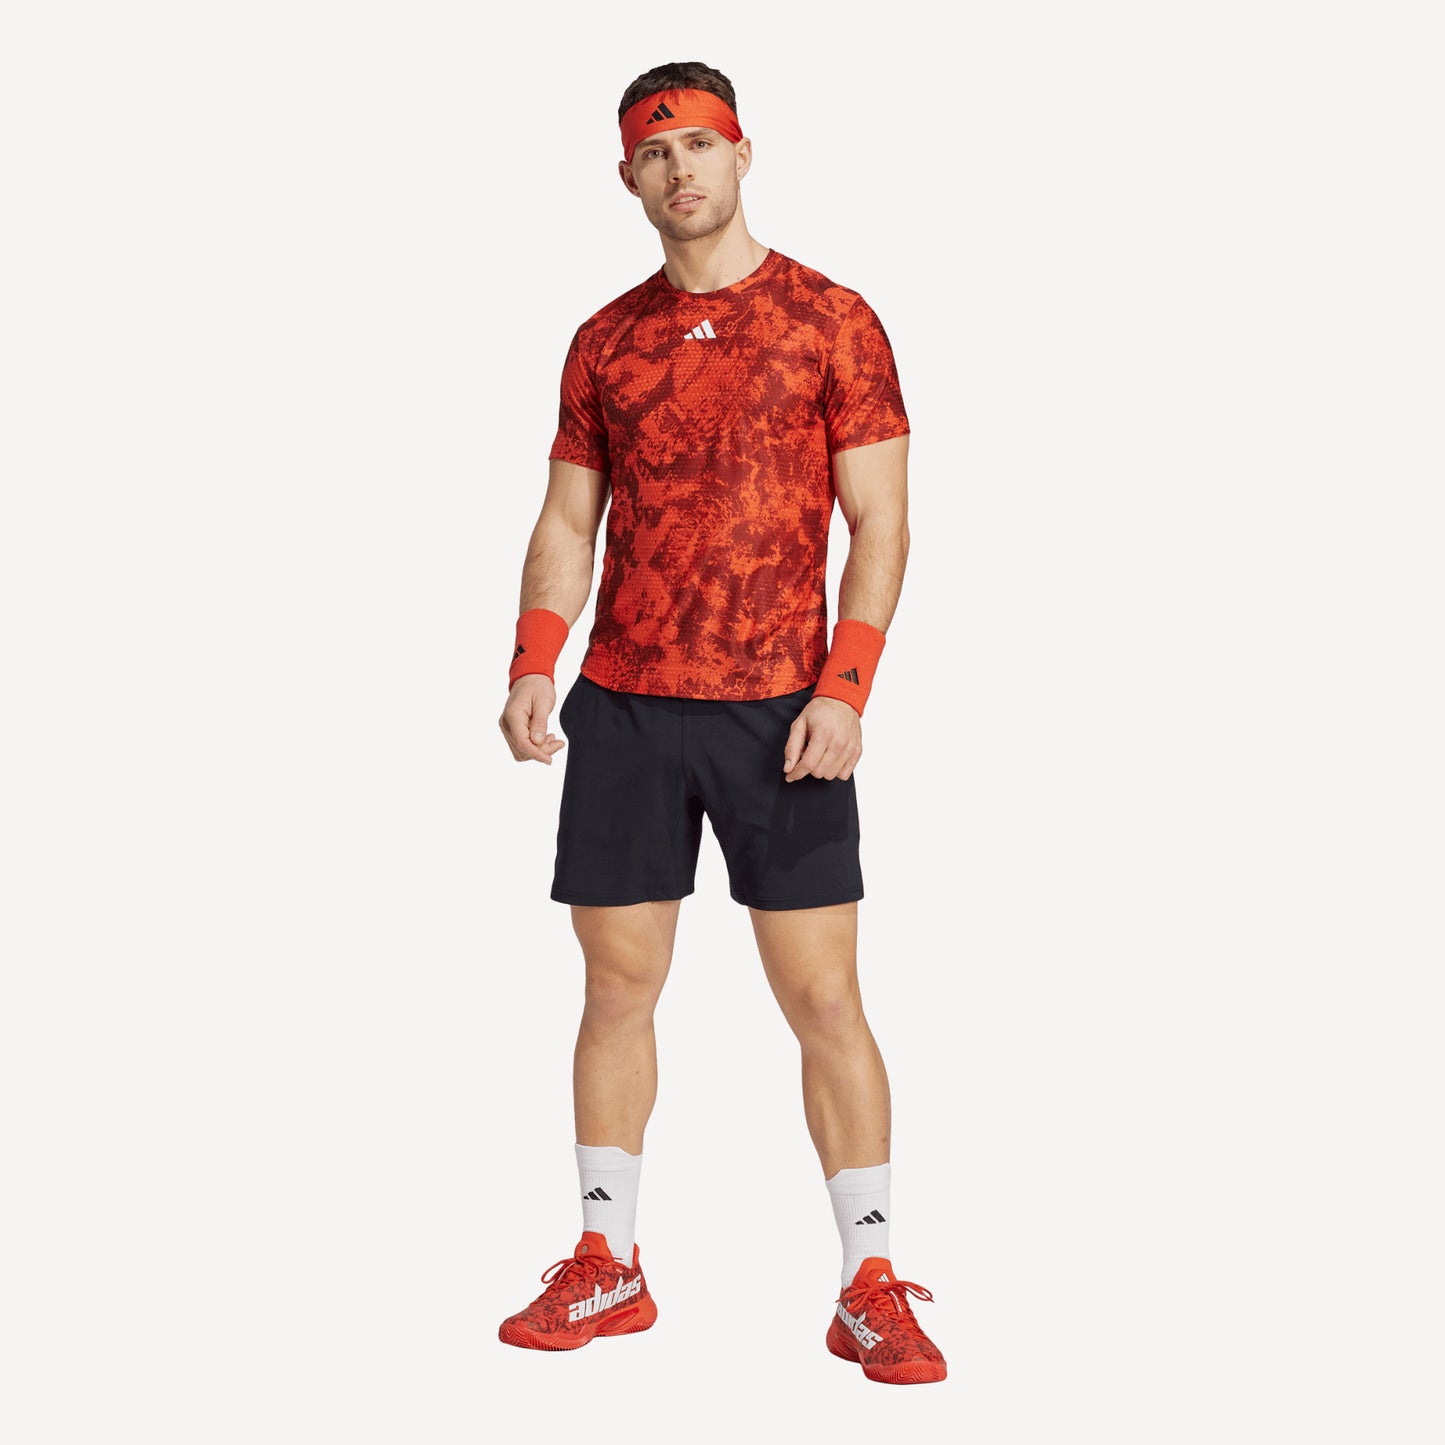 adidas Paris Freelift Men's Tennis Shirt Red (5)